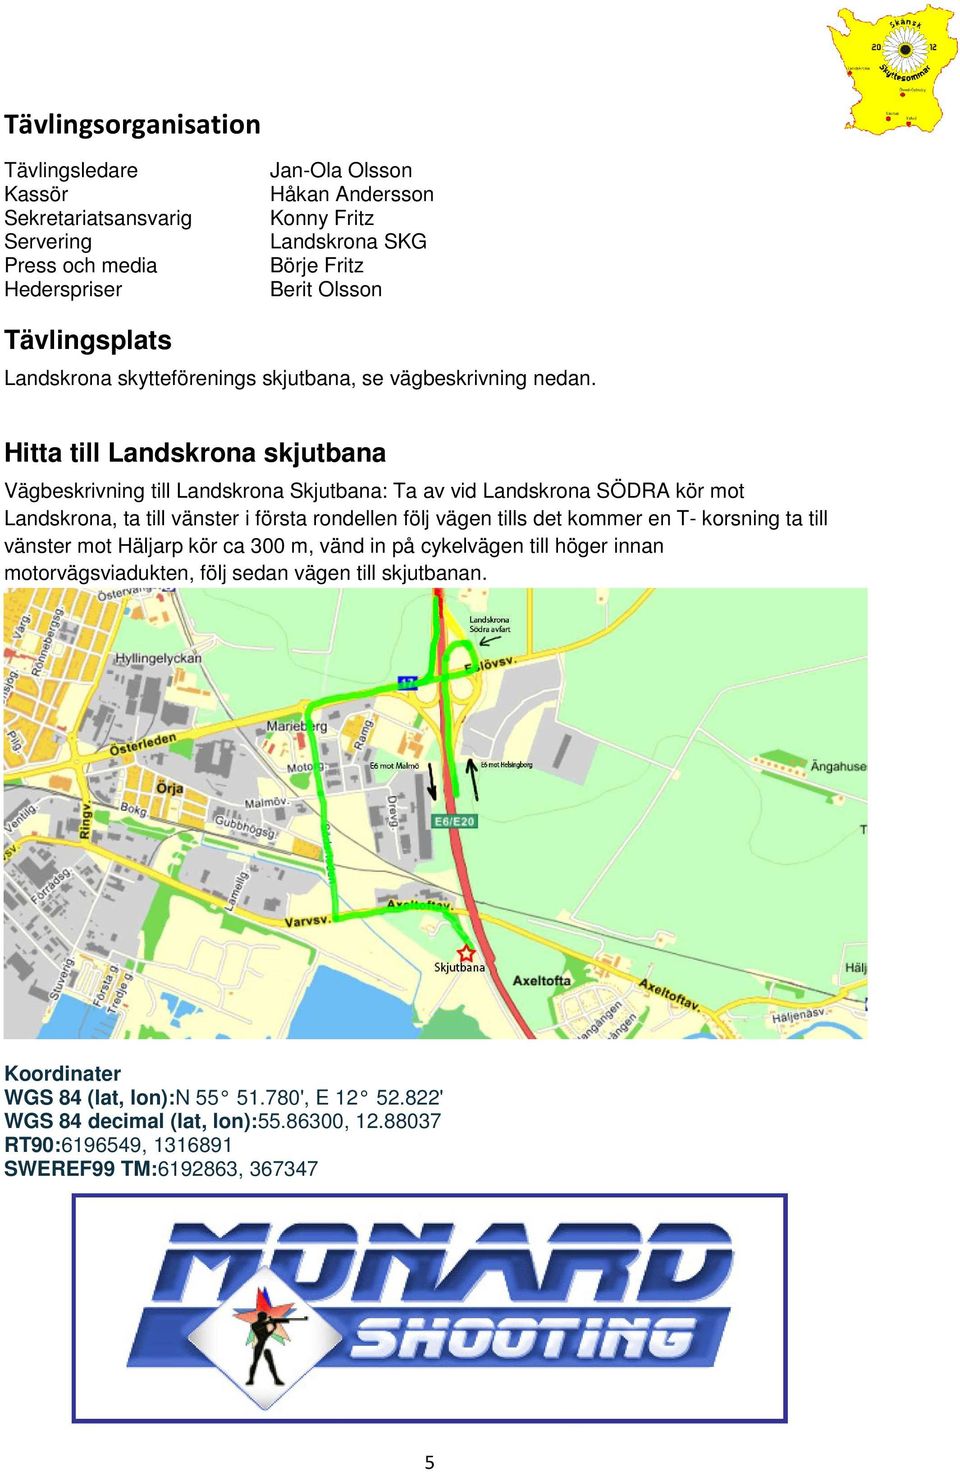 Hitta till Landskrona skjutbana Vägbeskrivning till Landskrona Skjutbana: Ta av vid Landskrona SÖDRA kör mot Landskrona, ta till vänster i första rondellen följ vägen tills det kommer en